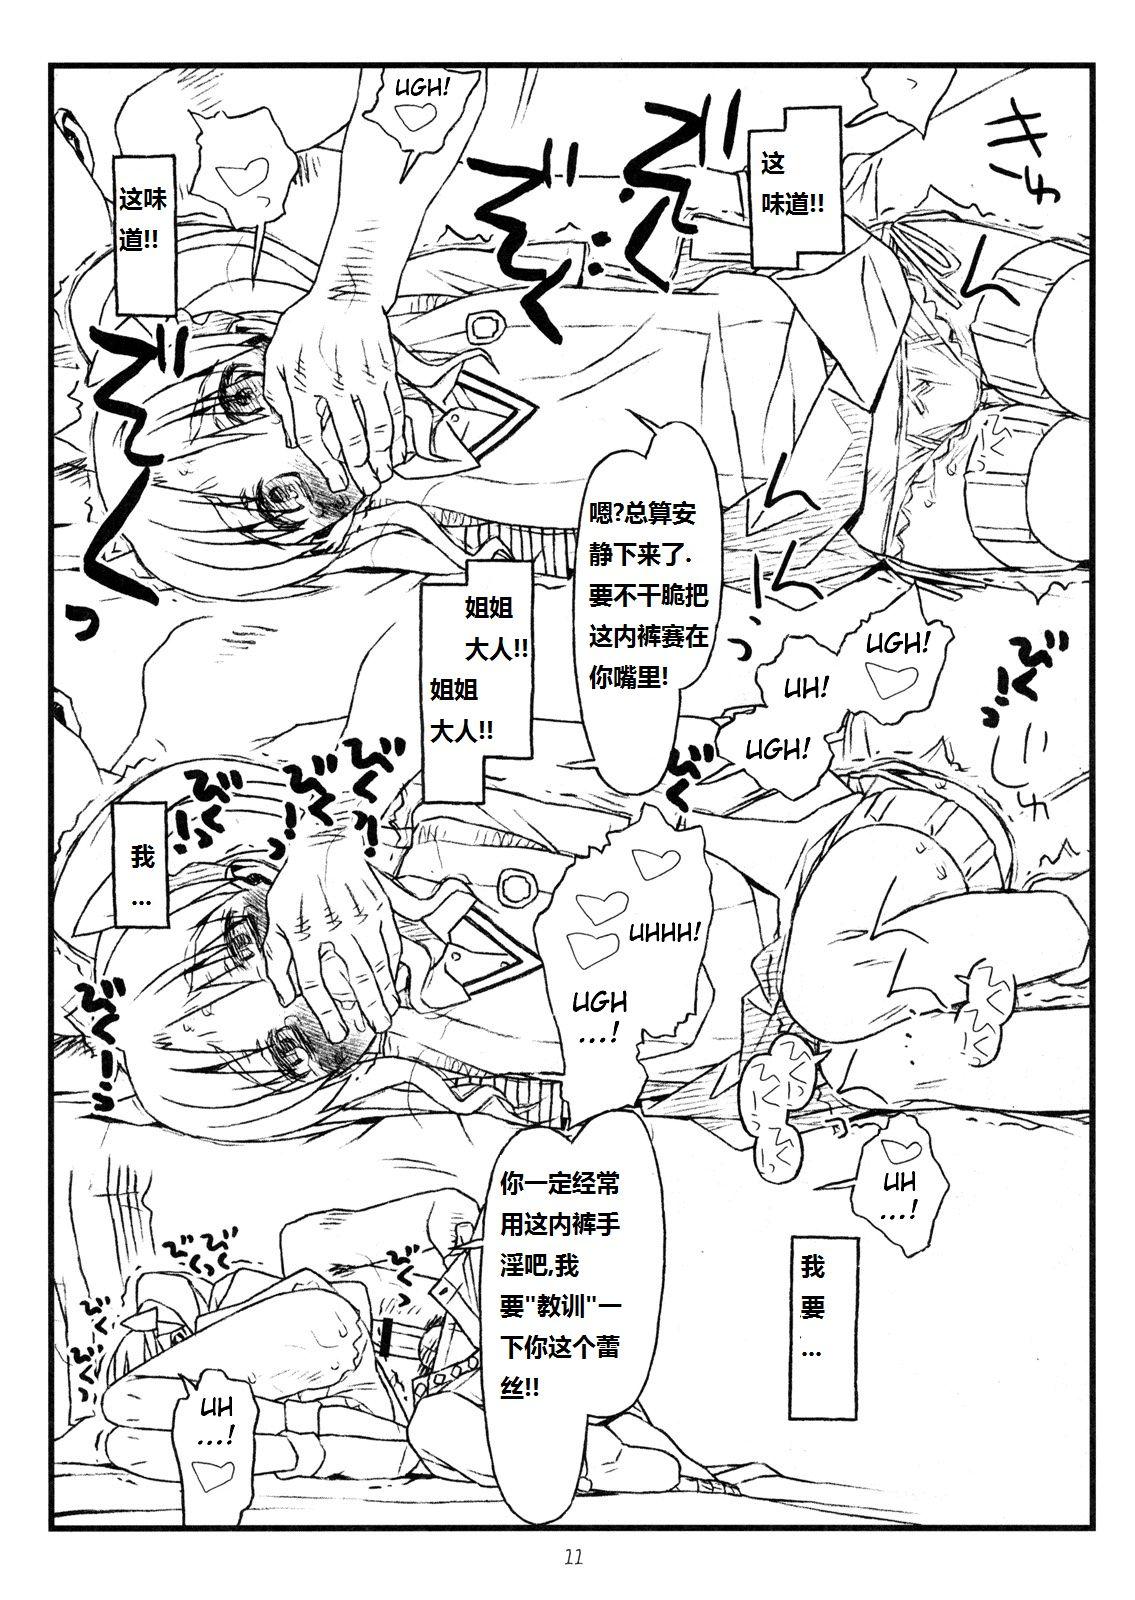 Tesao HAPPINESS IS A RAILGUN - Toaru kagaku no railgun Vagina - Page 10